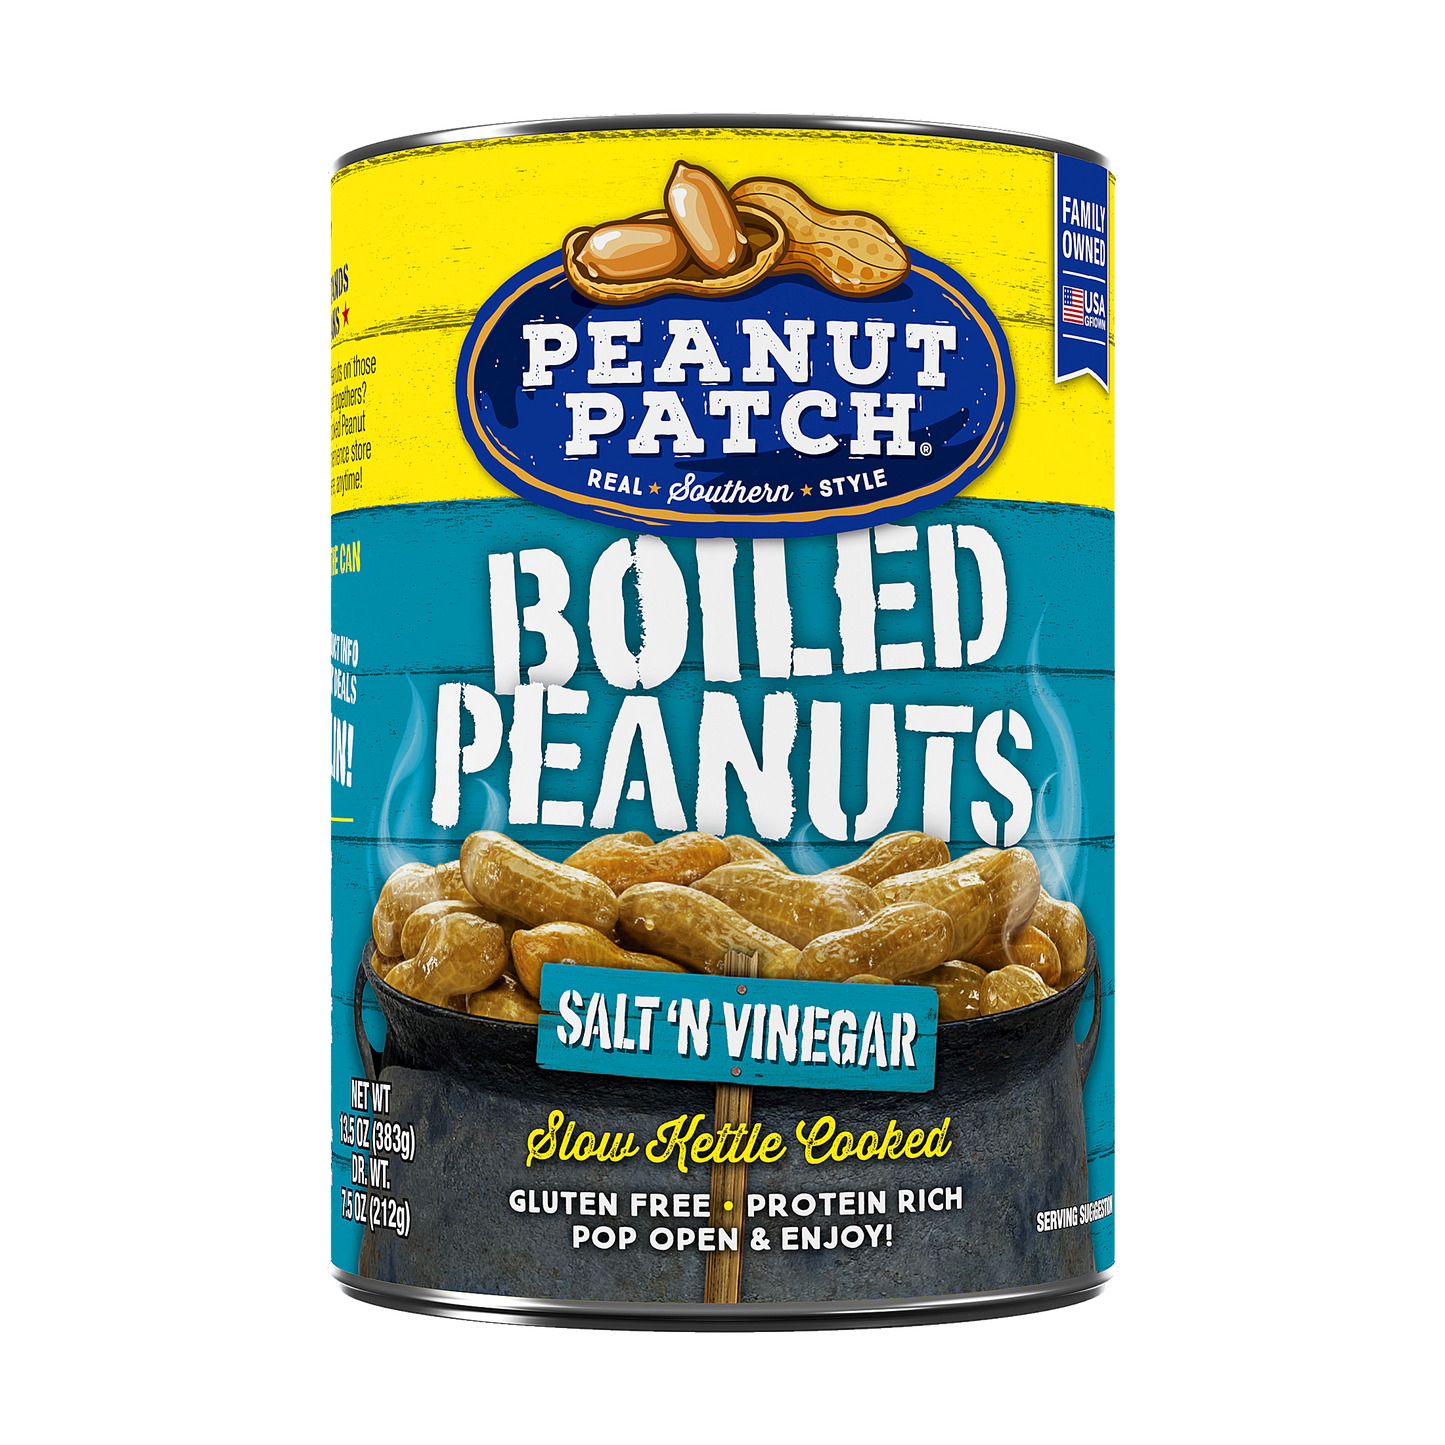 Salt N' Vinegar Boiled Peanuts (13.5oz, 12 Pack)